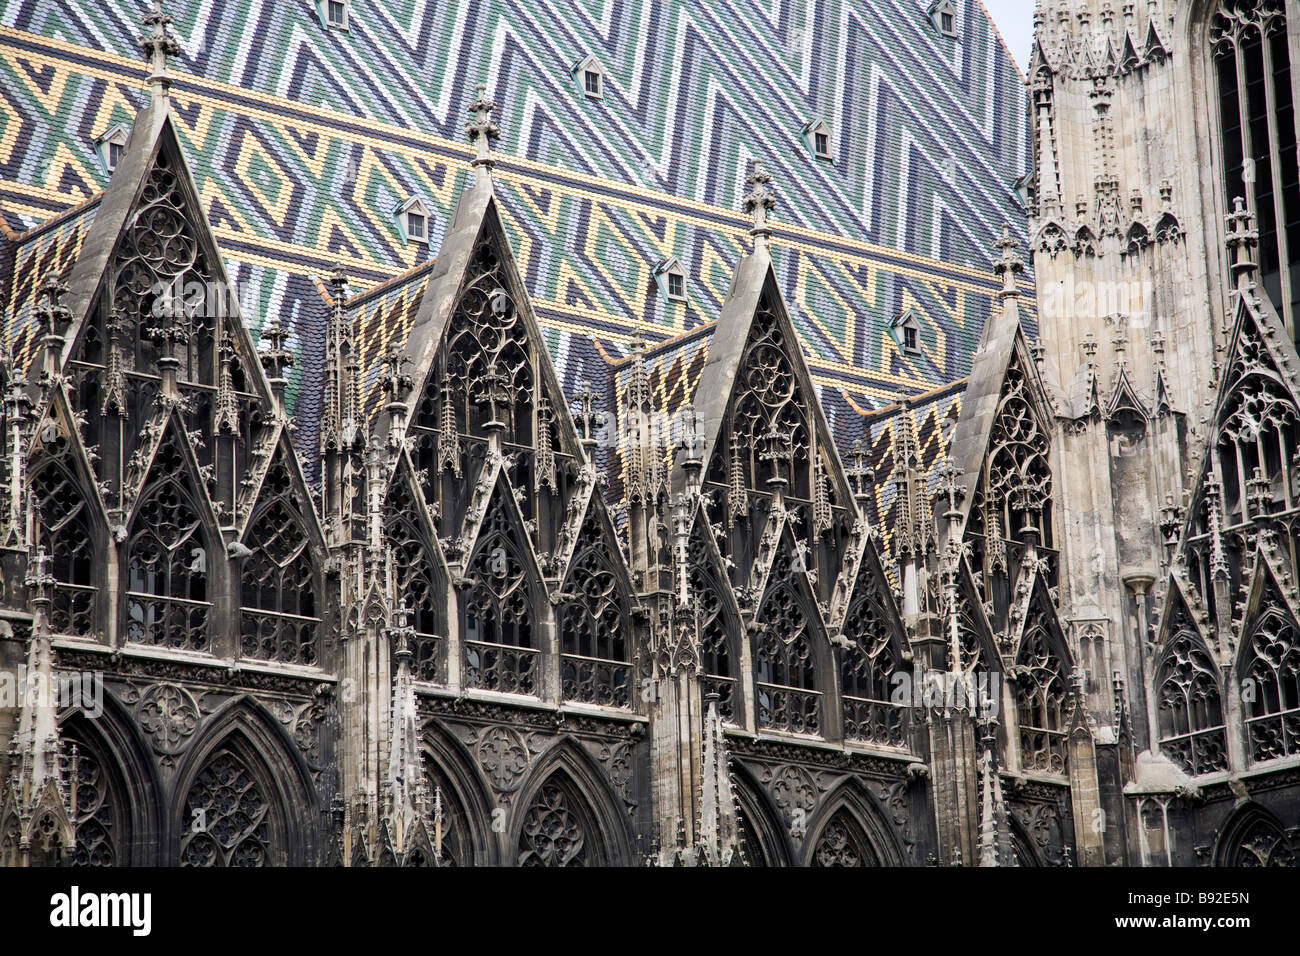 Le toit géométriques colorées et dentelle gothique de la cathédrale St Stephens Stephansdom dans le centre de Vienne Autriche Banque D'Images